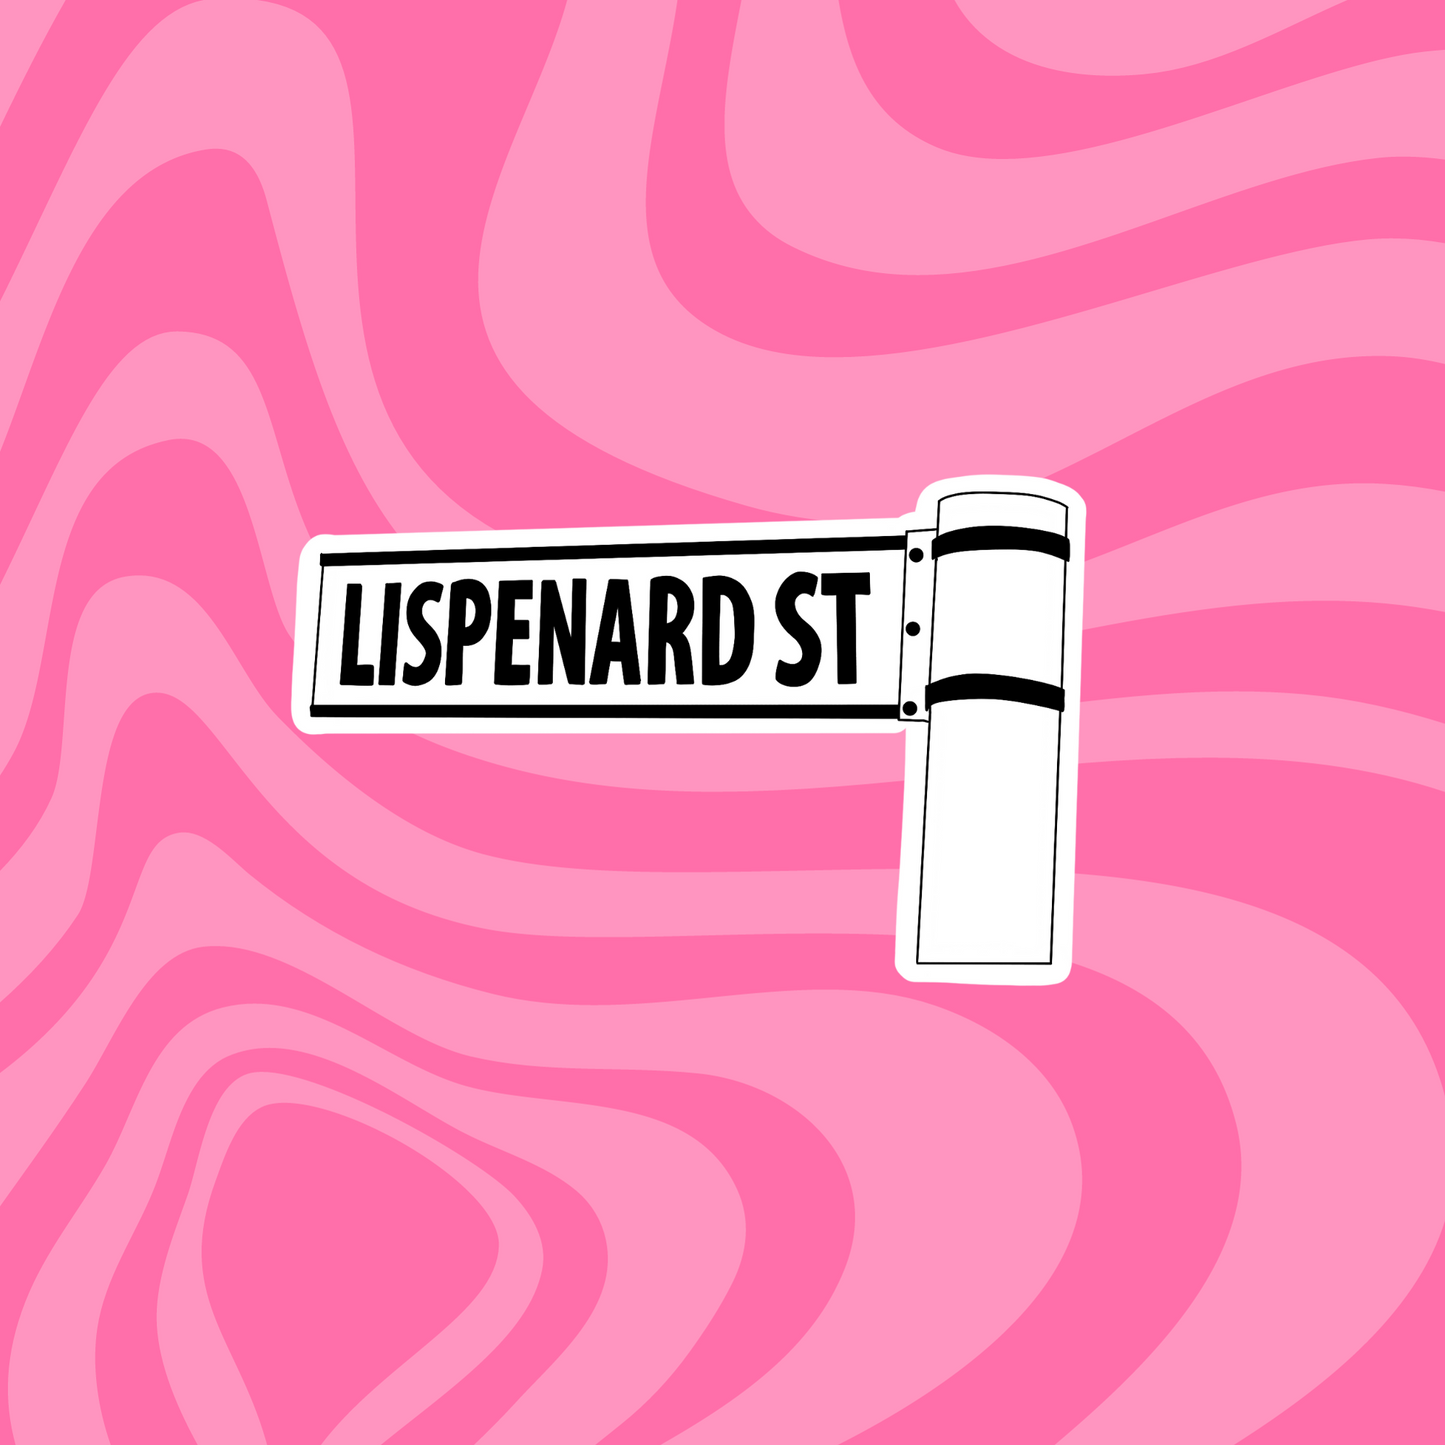 Lispenard St Sign | A Little Life